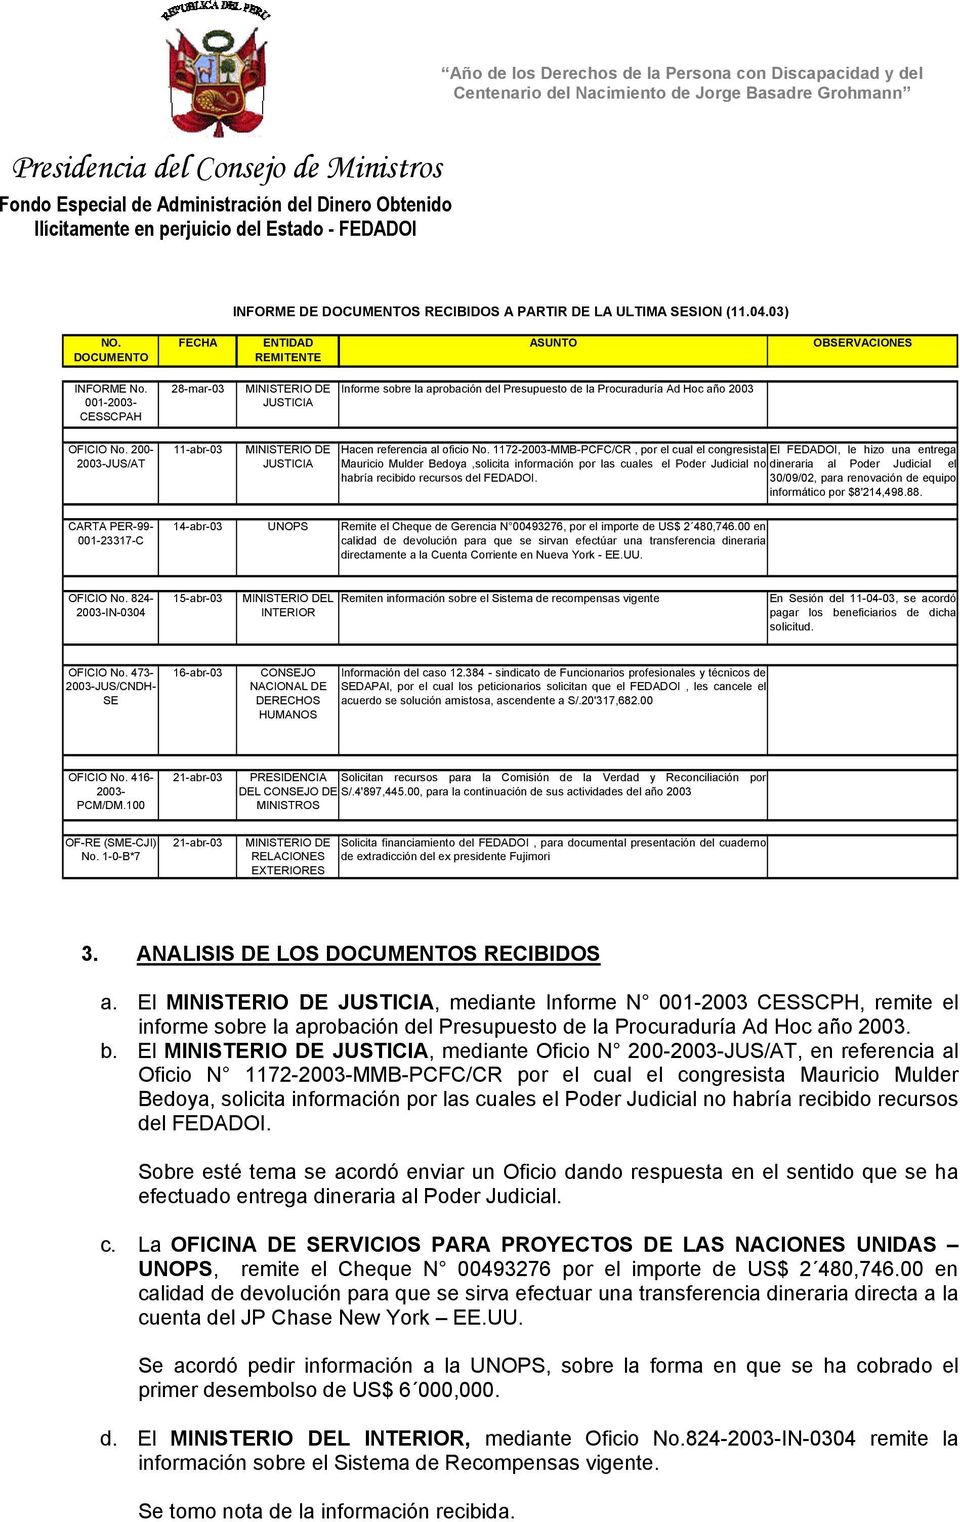 200-2003-JUS/AT 11-abr-03 MINISTERIO DE JUSTICIA Hacen referencia al oficio No.